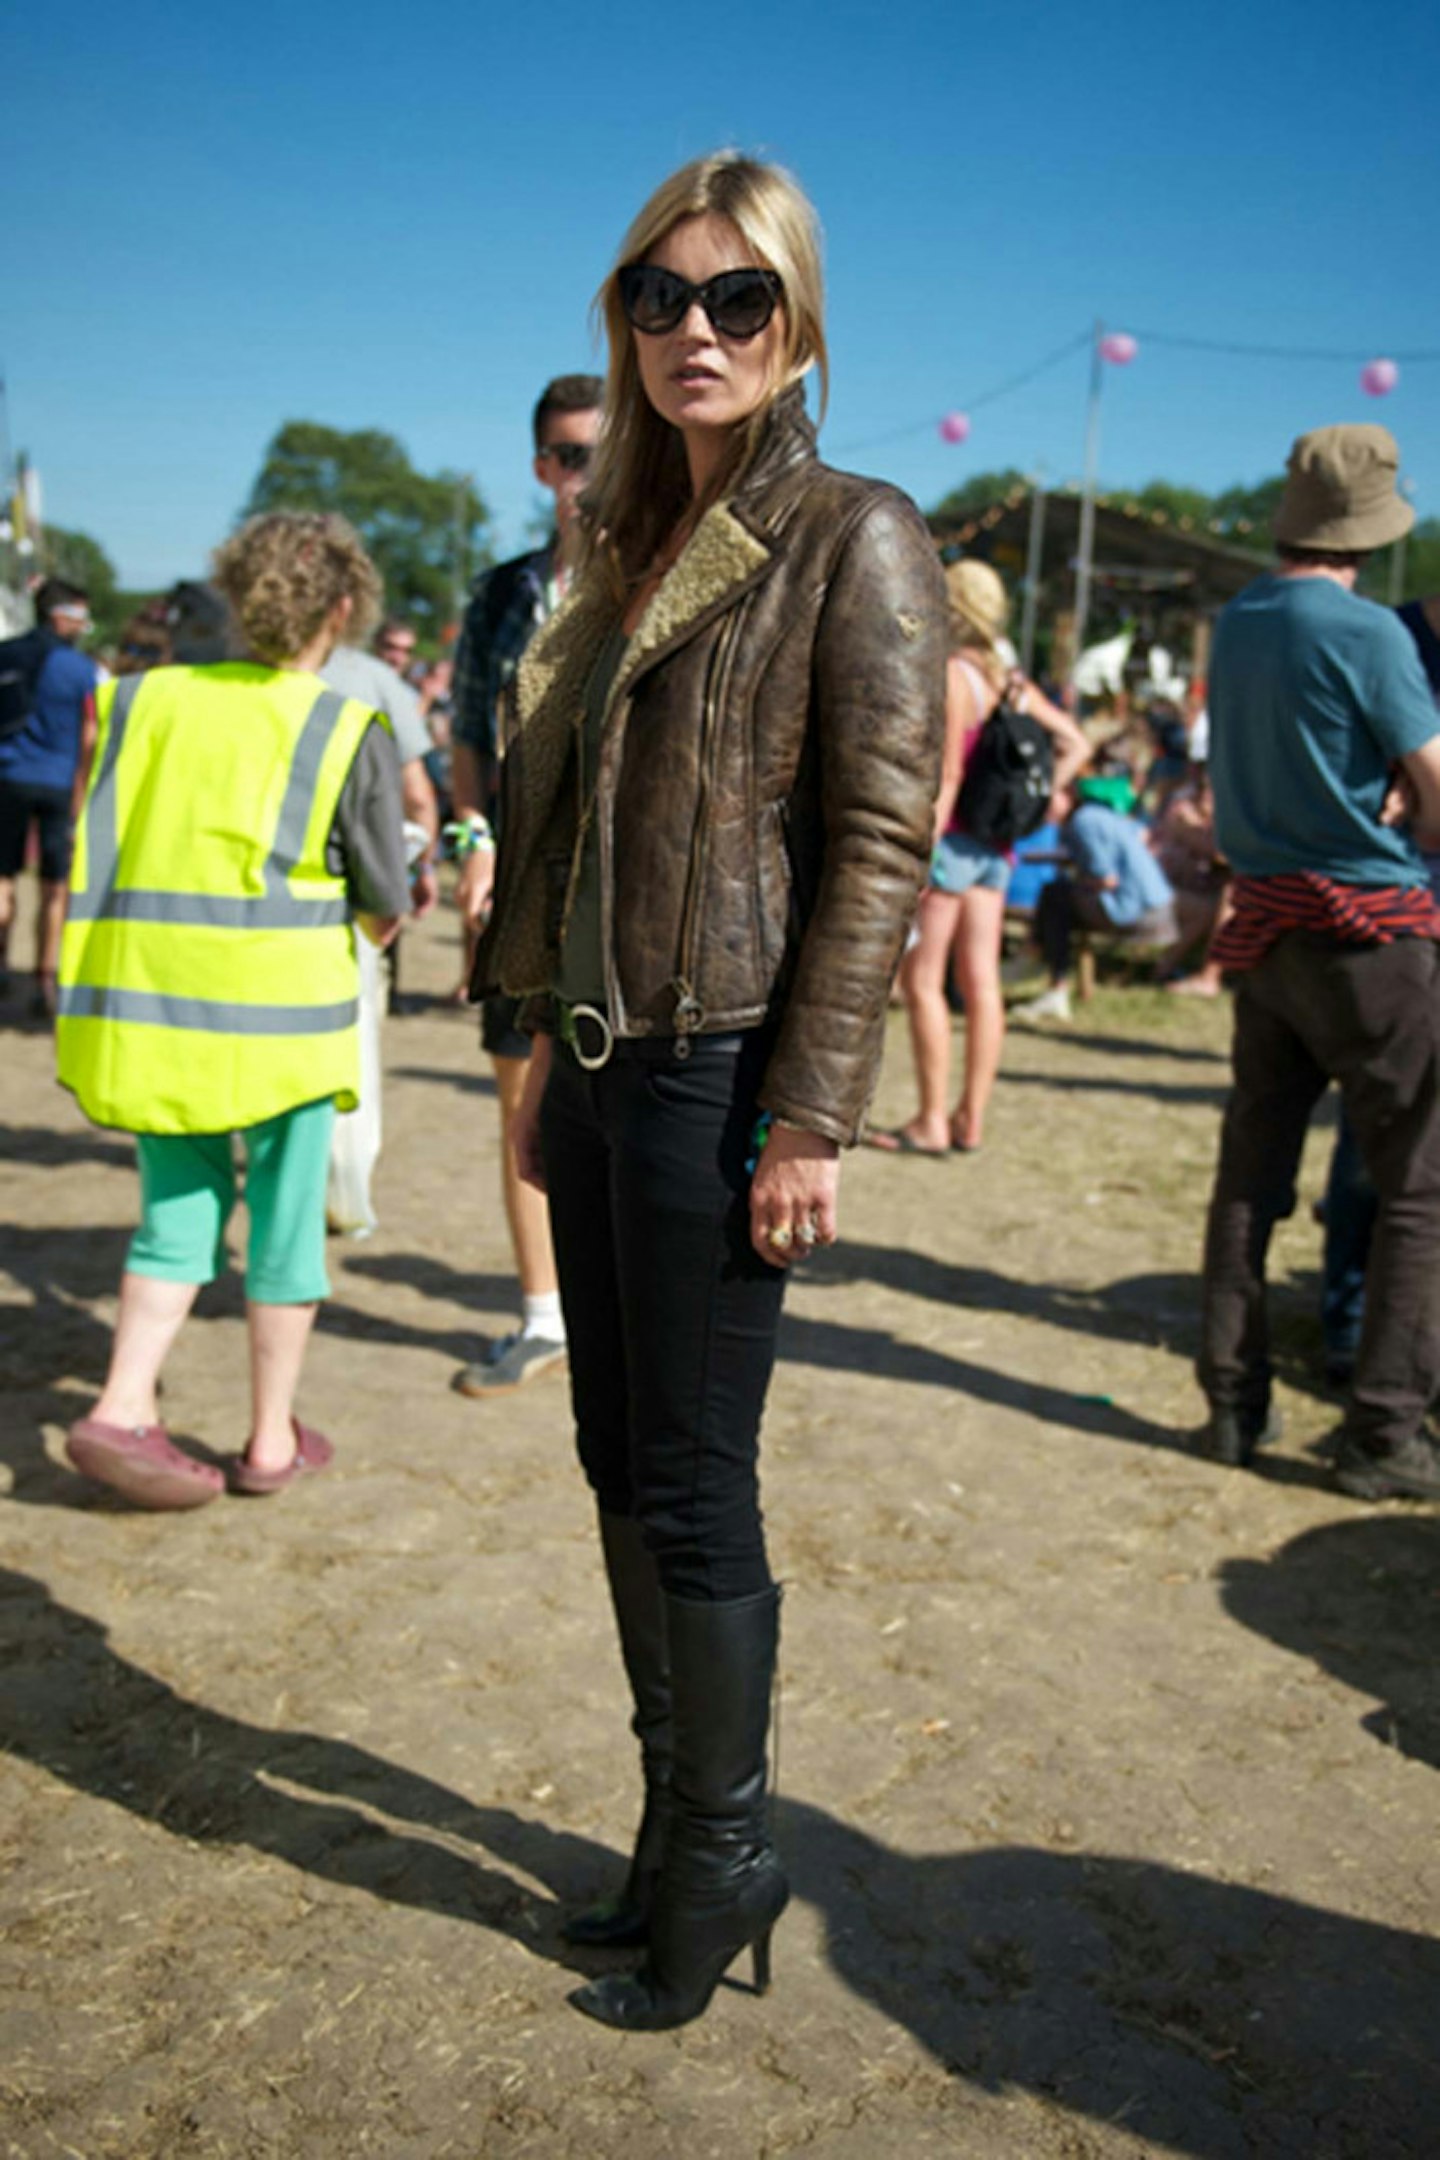 29-Kate Moss at Glastonbury Festival 2013 - 29 June 2013